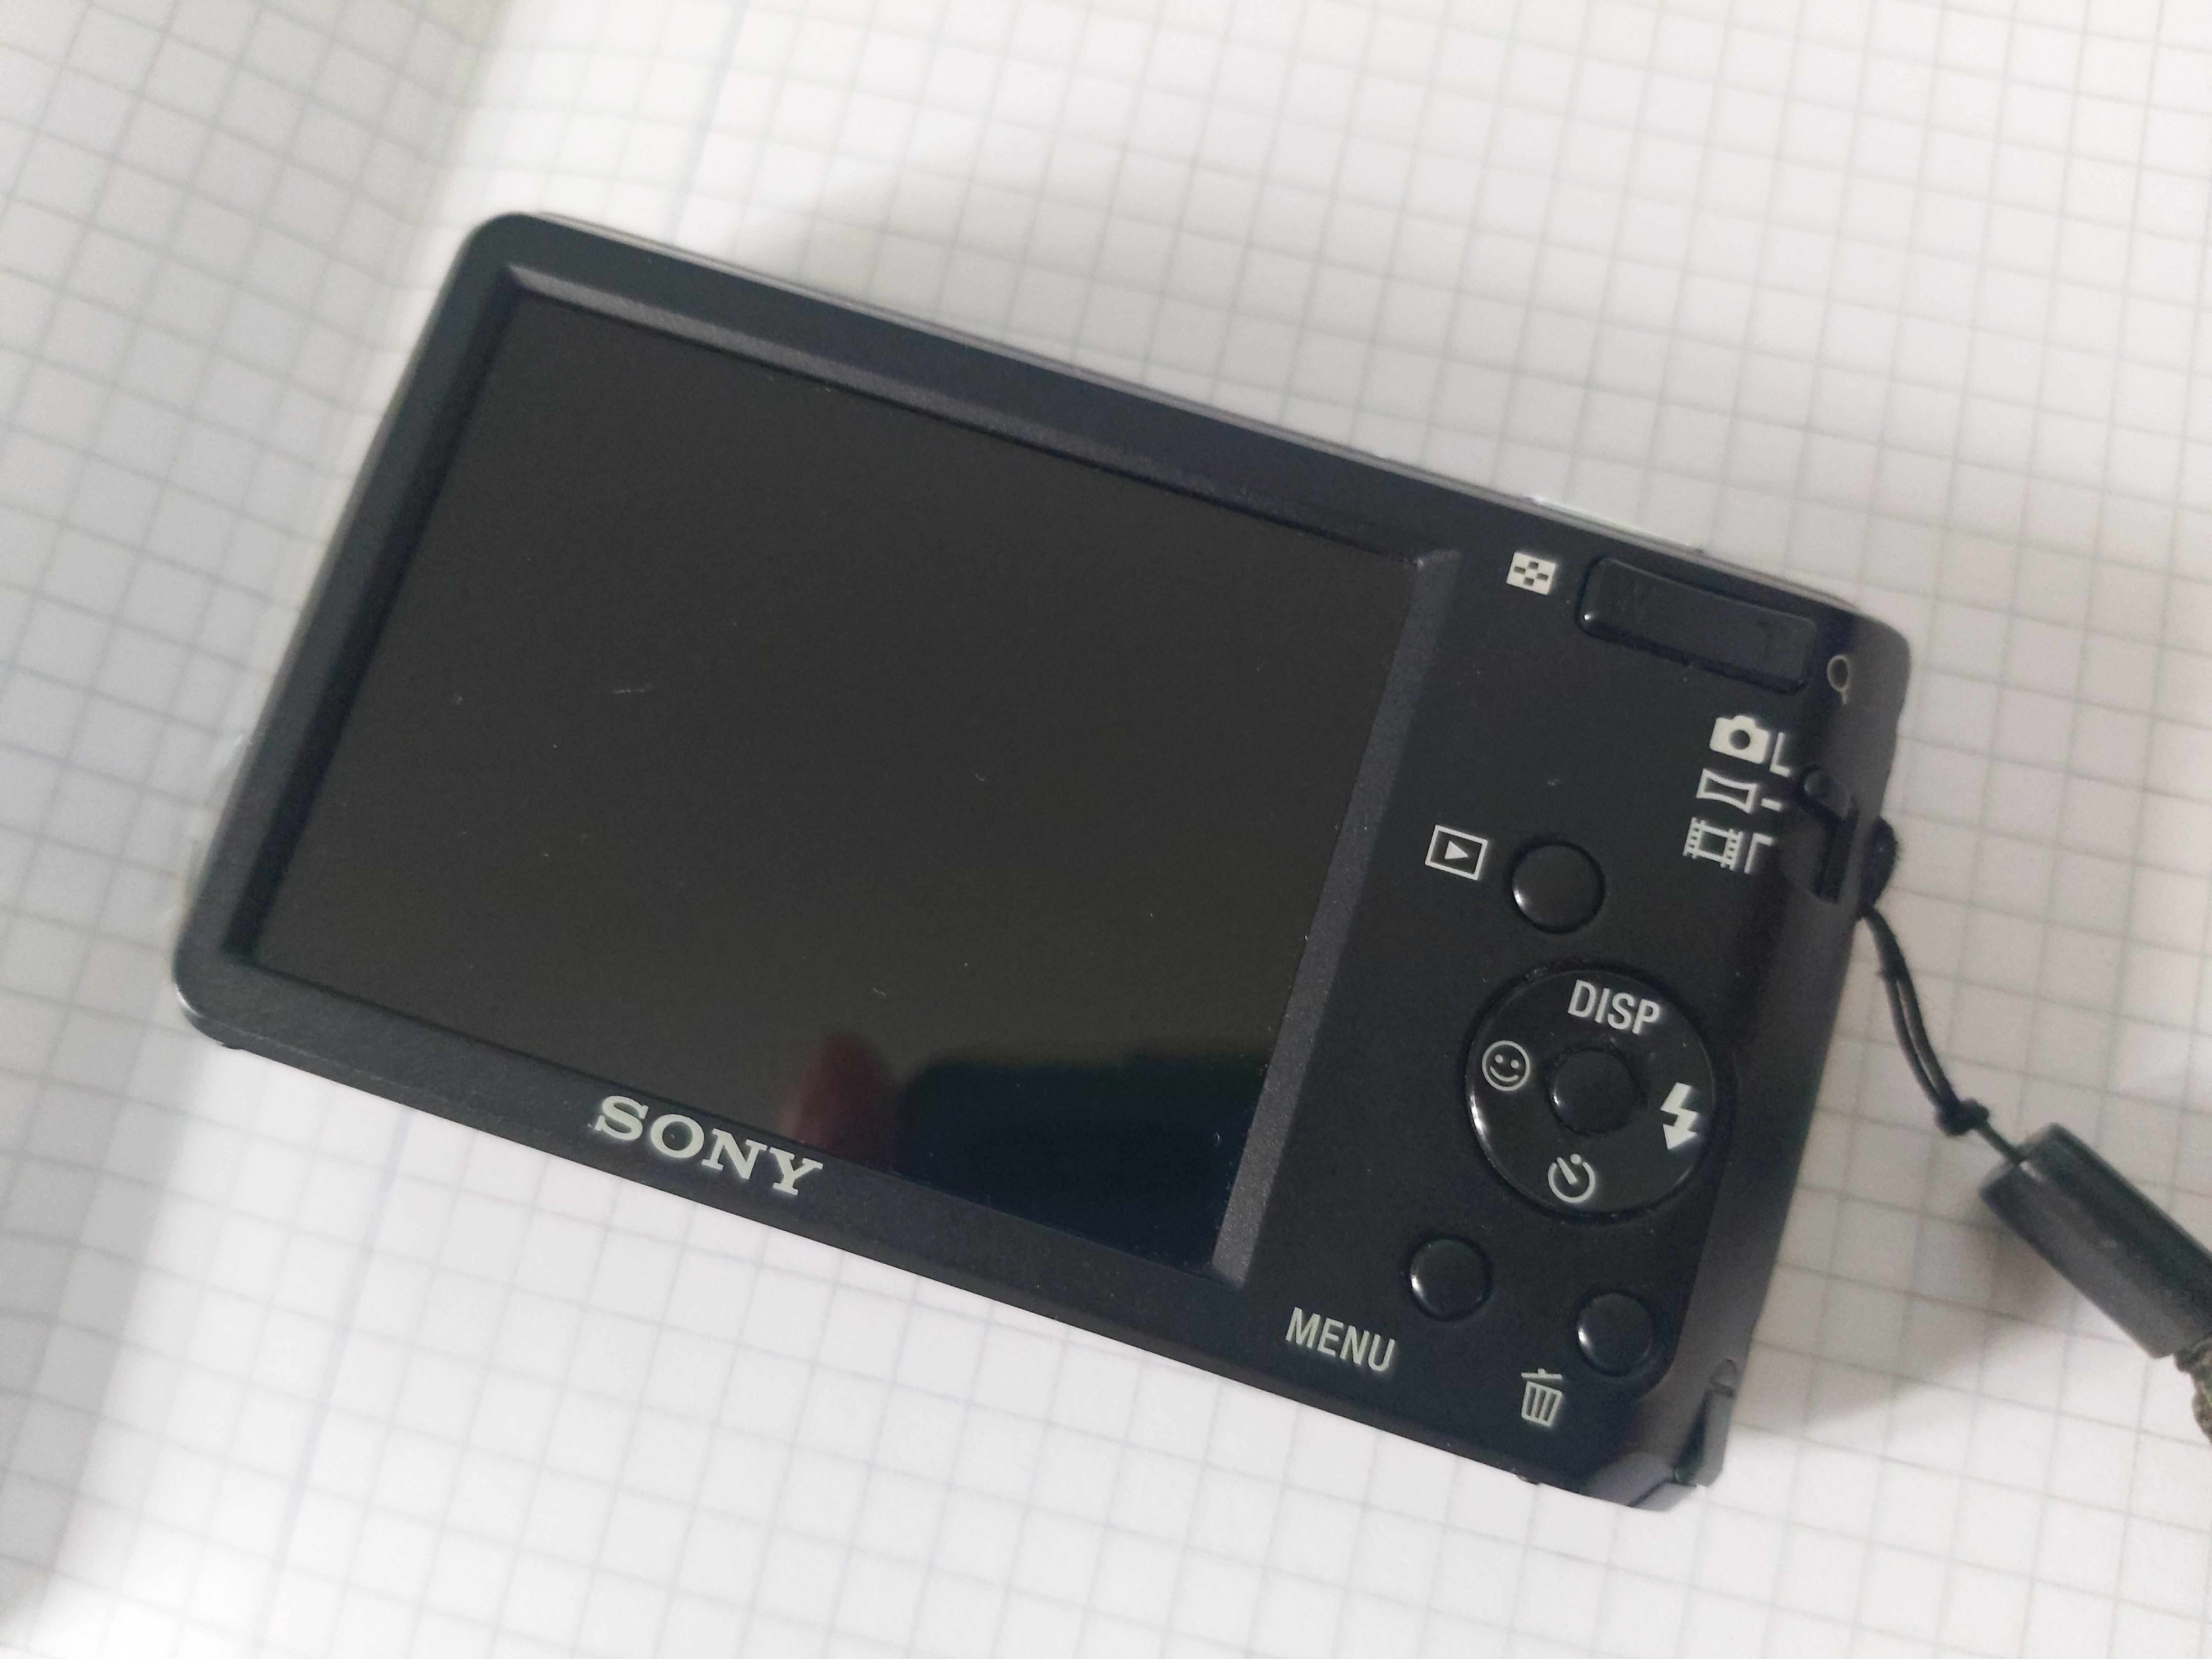 Sony 14.1 mpx DSC W520